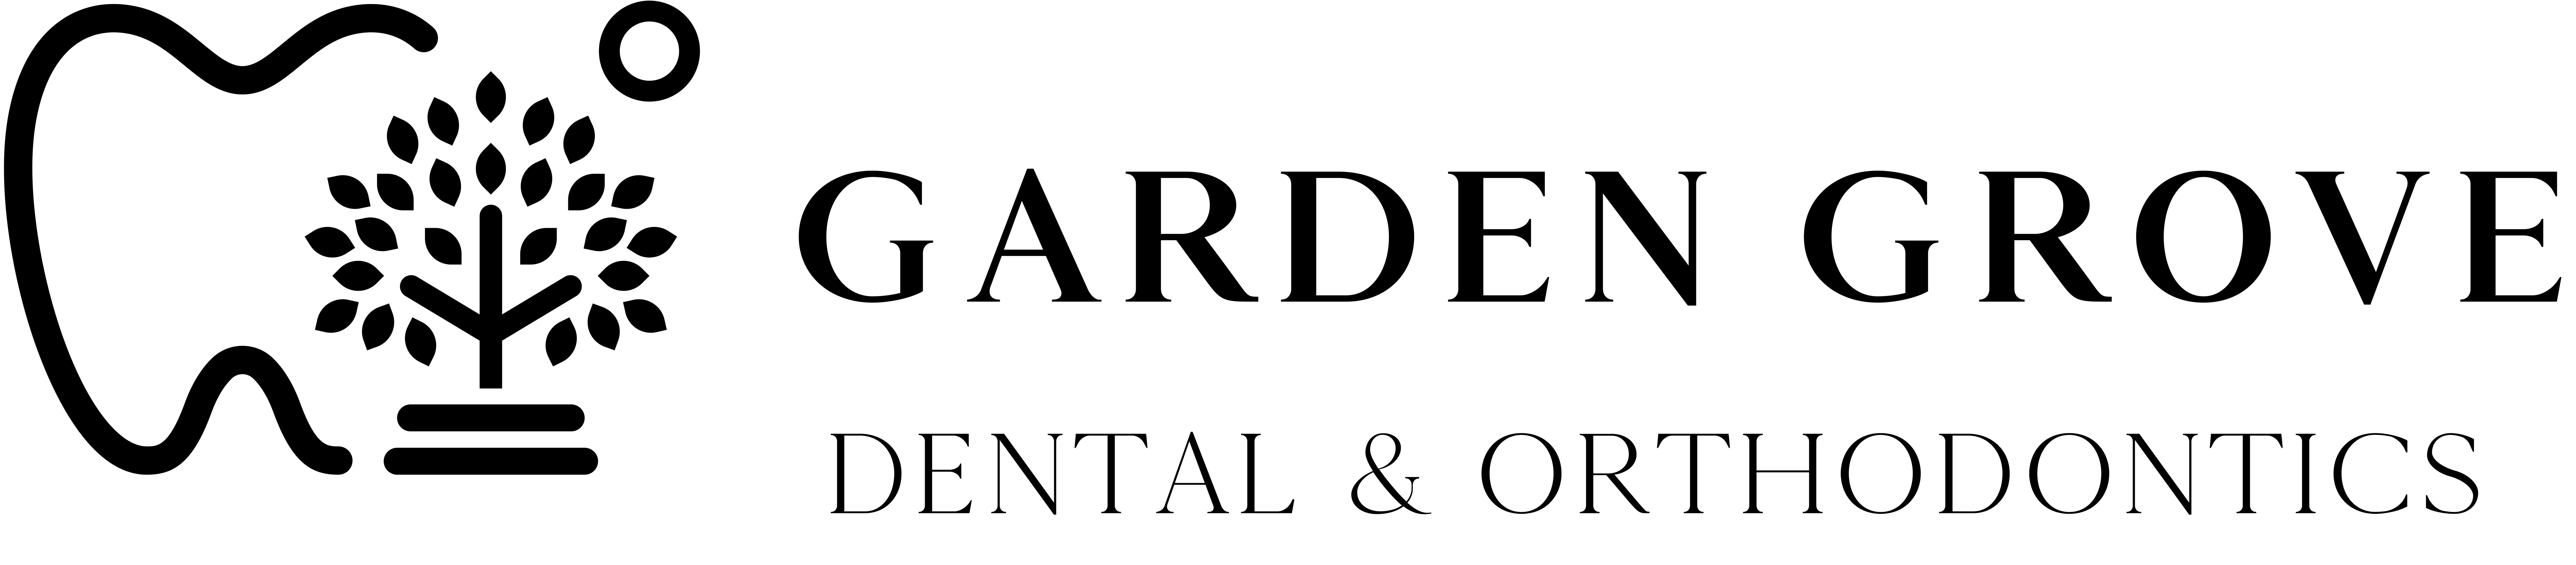 Garden Grove Dental & Orthodontics